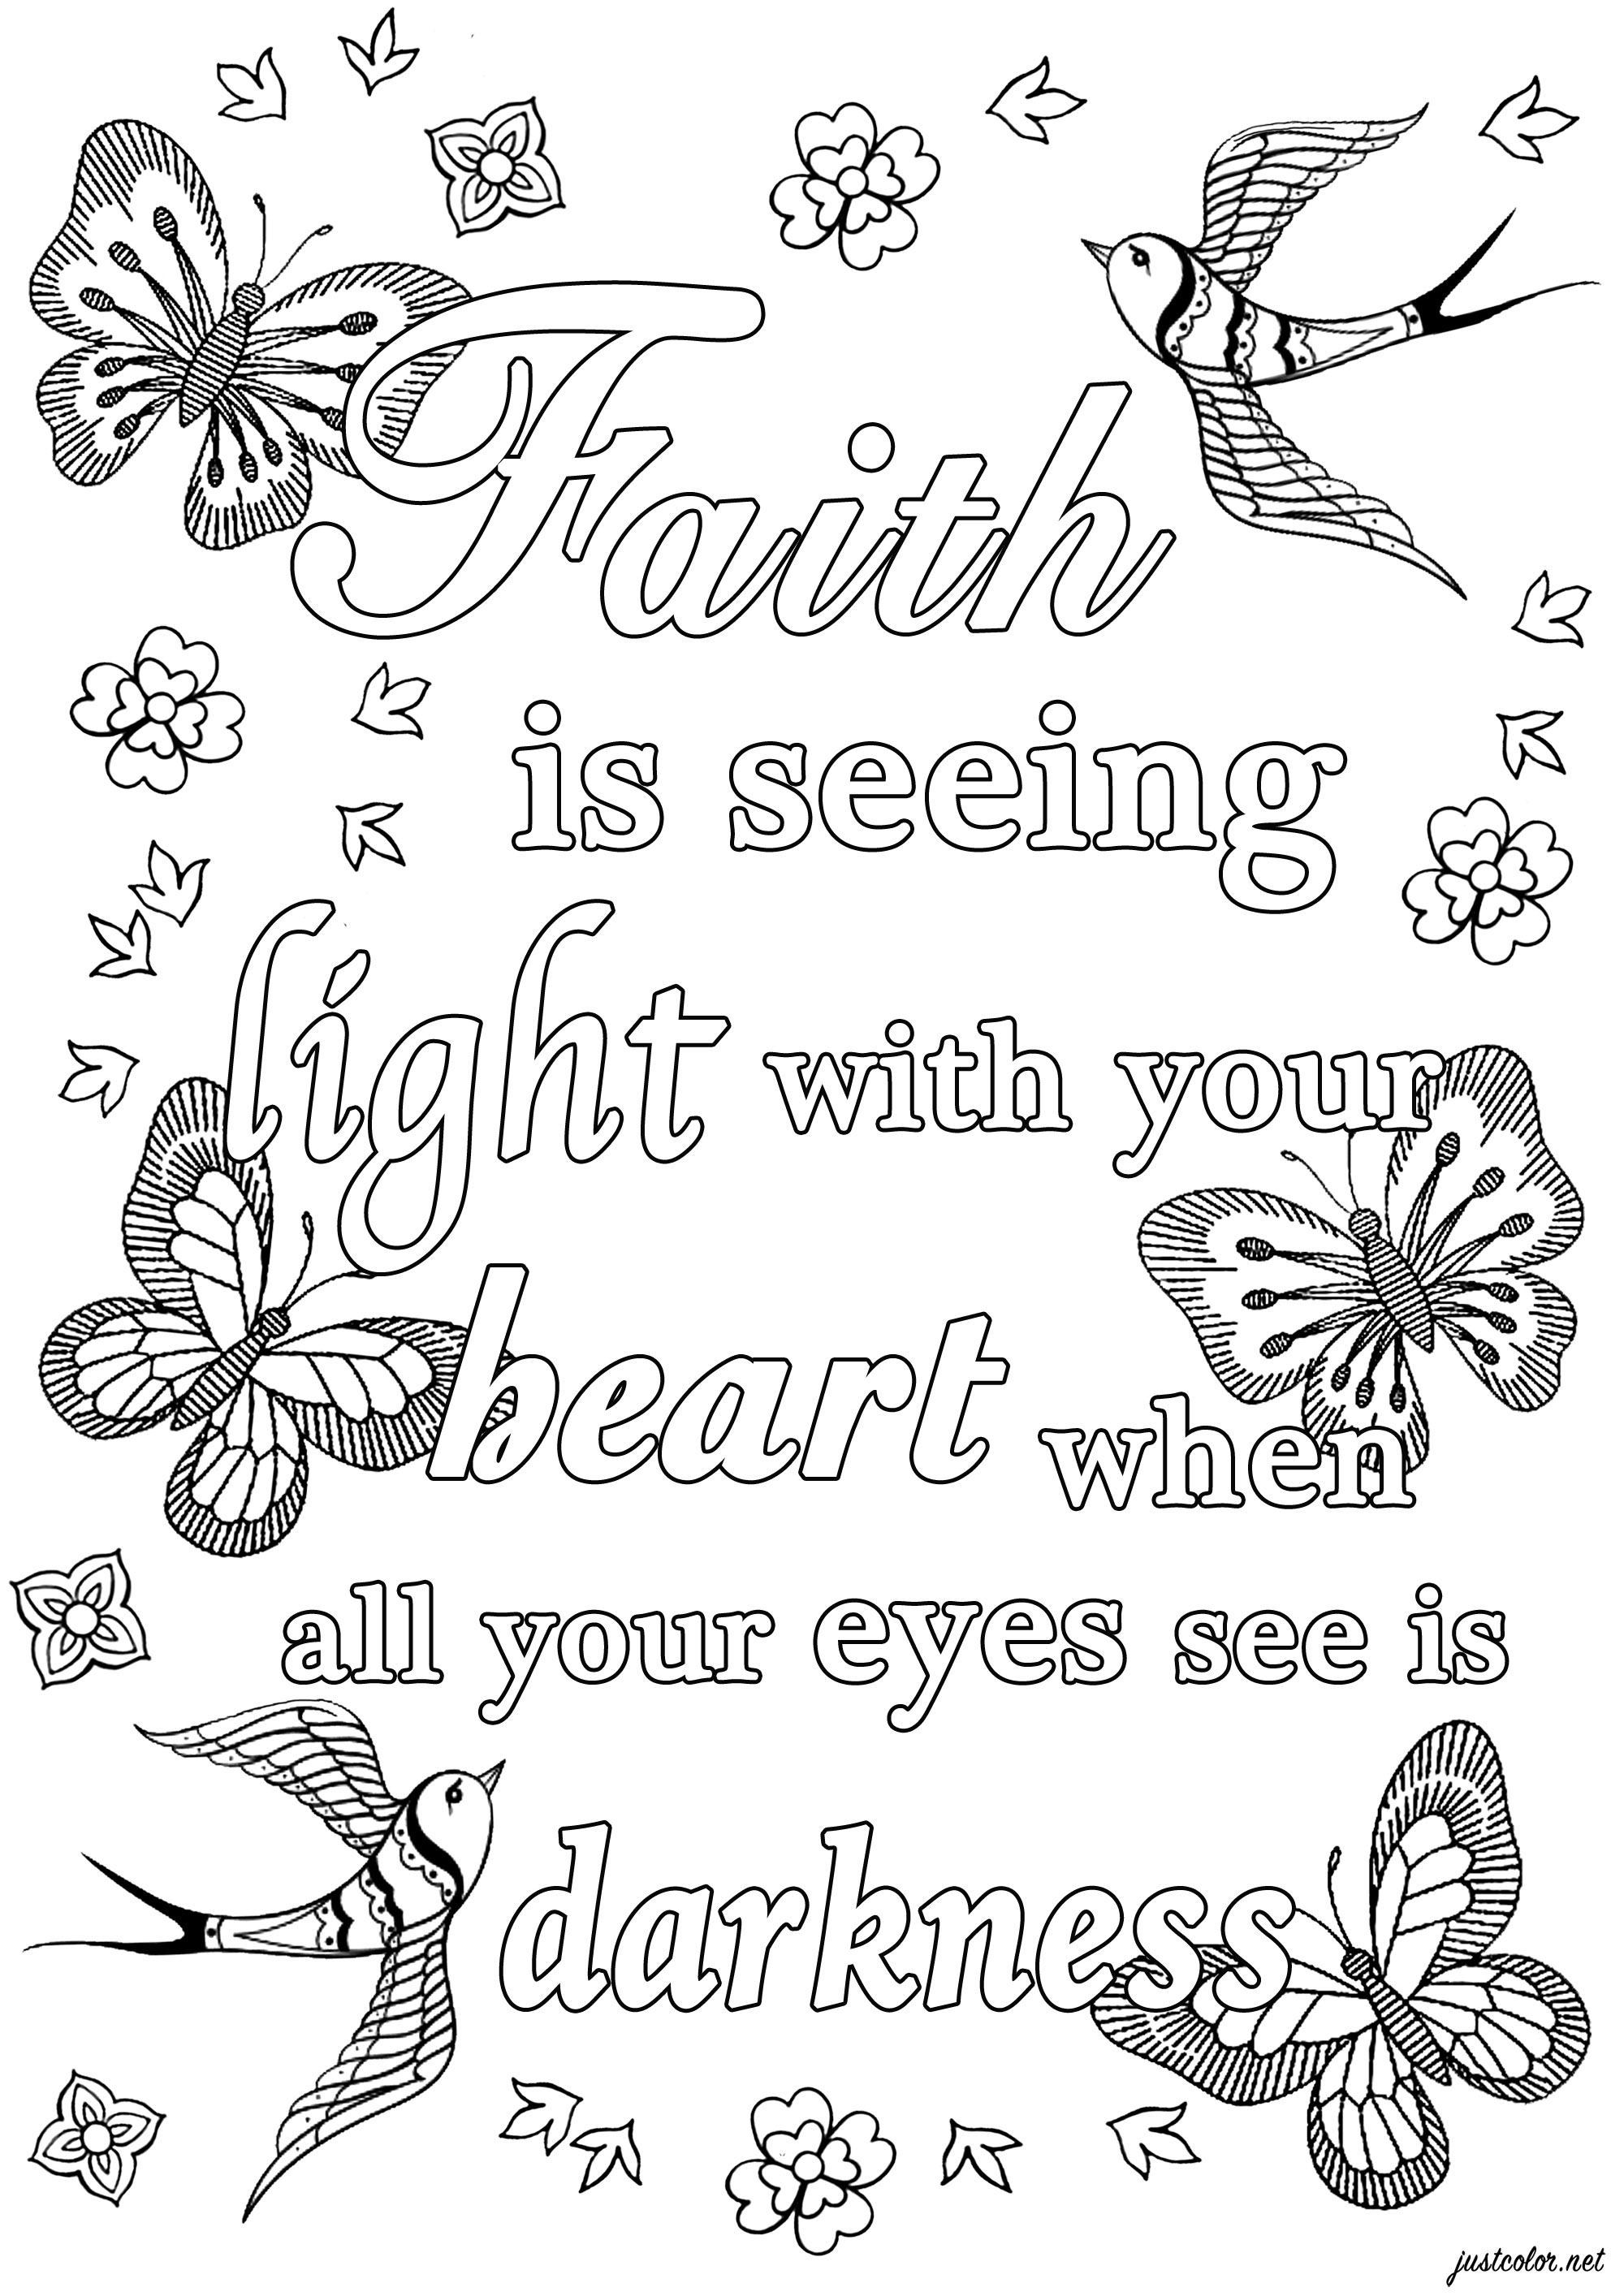 Faith is seeing light with your heart, when all your eyes see is darkness. (La foi, c'est voir la lumière avec votre cœur, quand tous vos yeux voient l'obscurité)